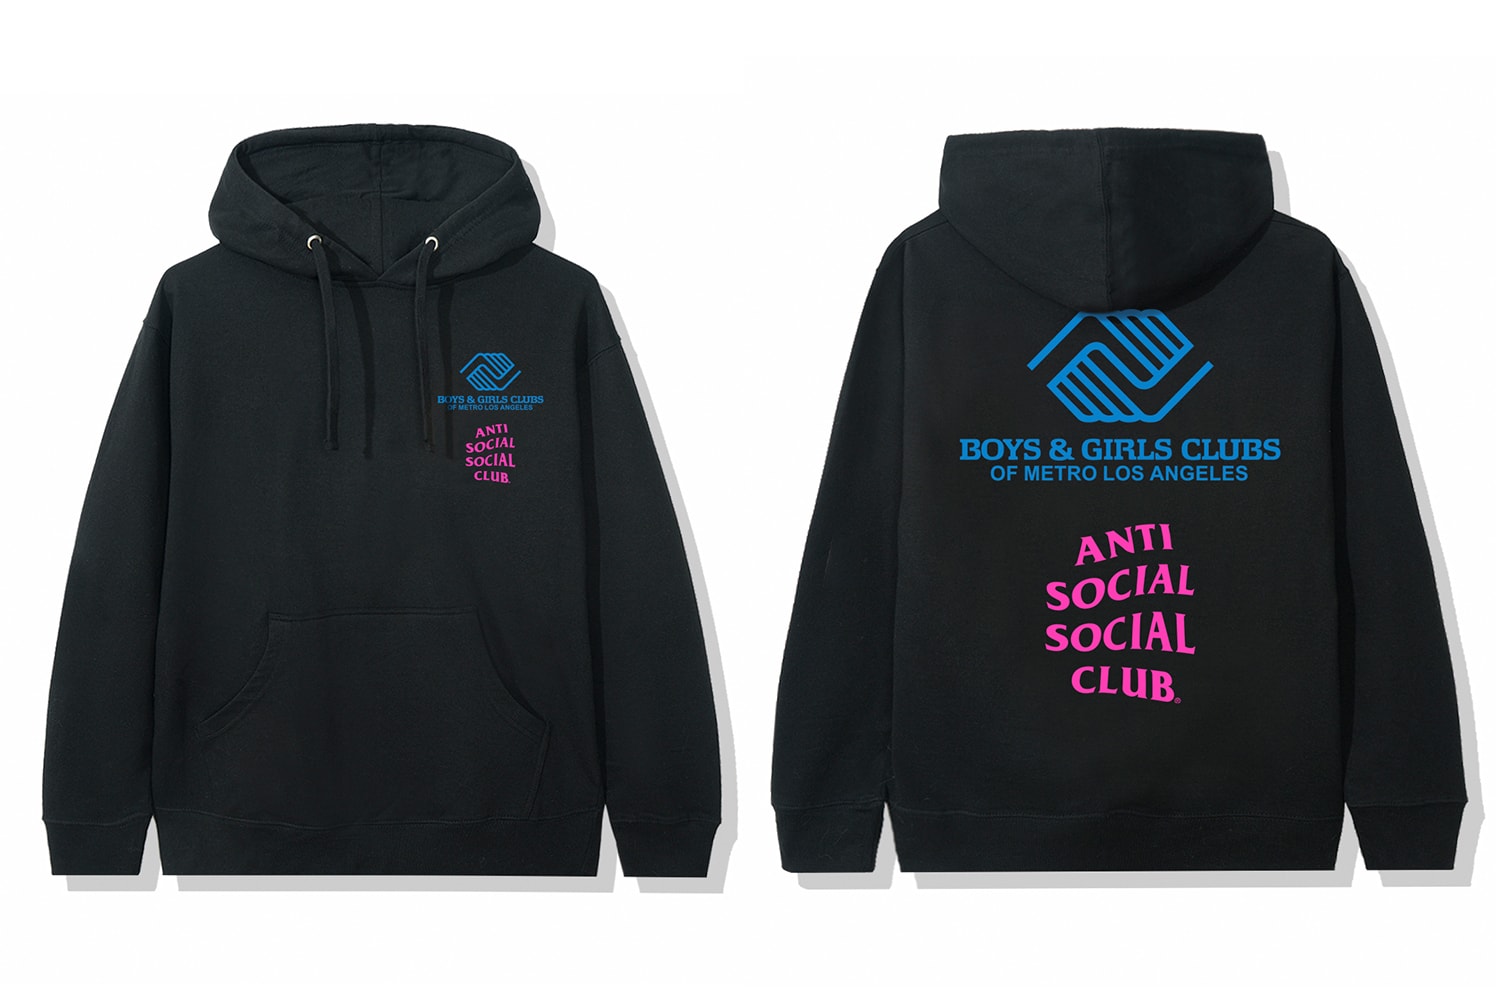 アンチ・ソーシャル・ソーシャル・クラブ Anti Social Social Club Boys & Girls Clubs of Metro Los Angeles Capsule Release Info Buy Price Date T shirt Hoodie Cap